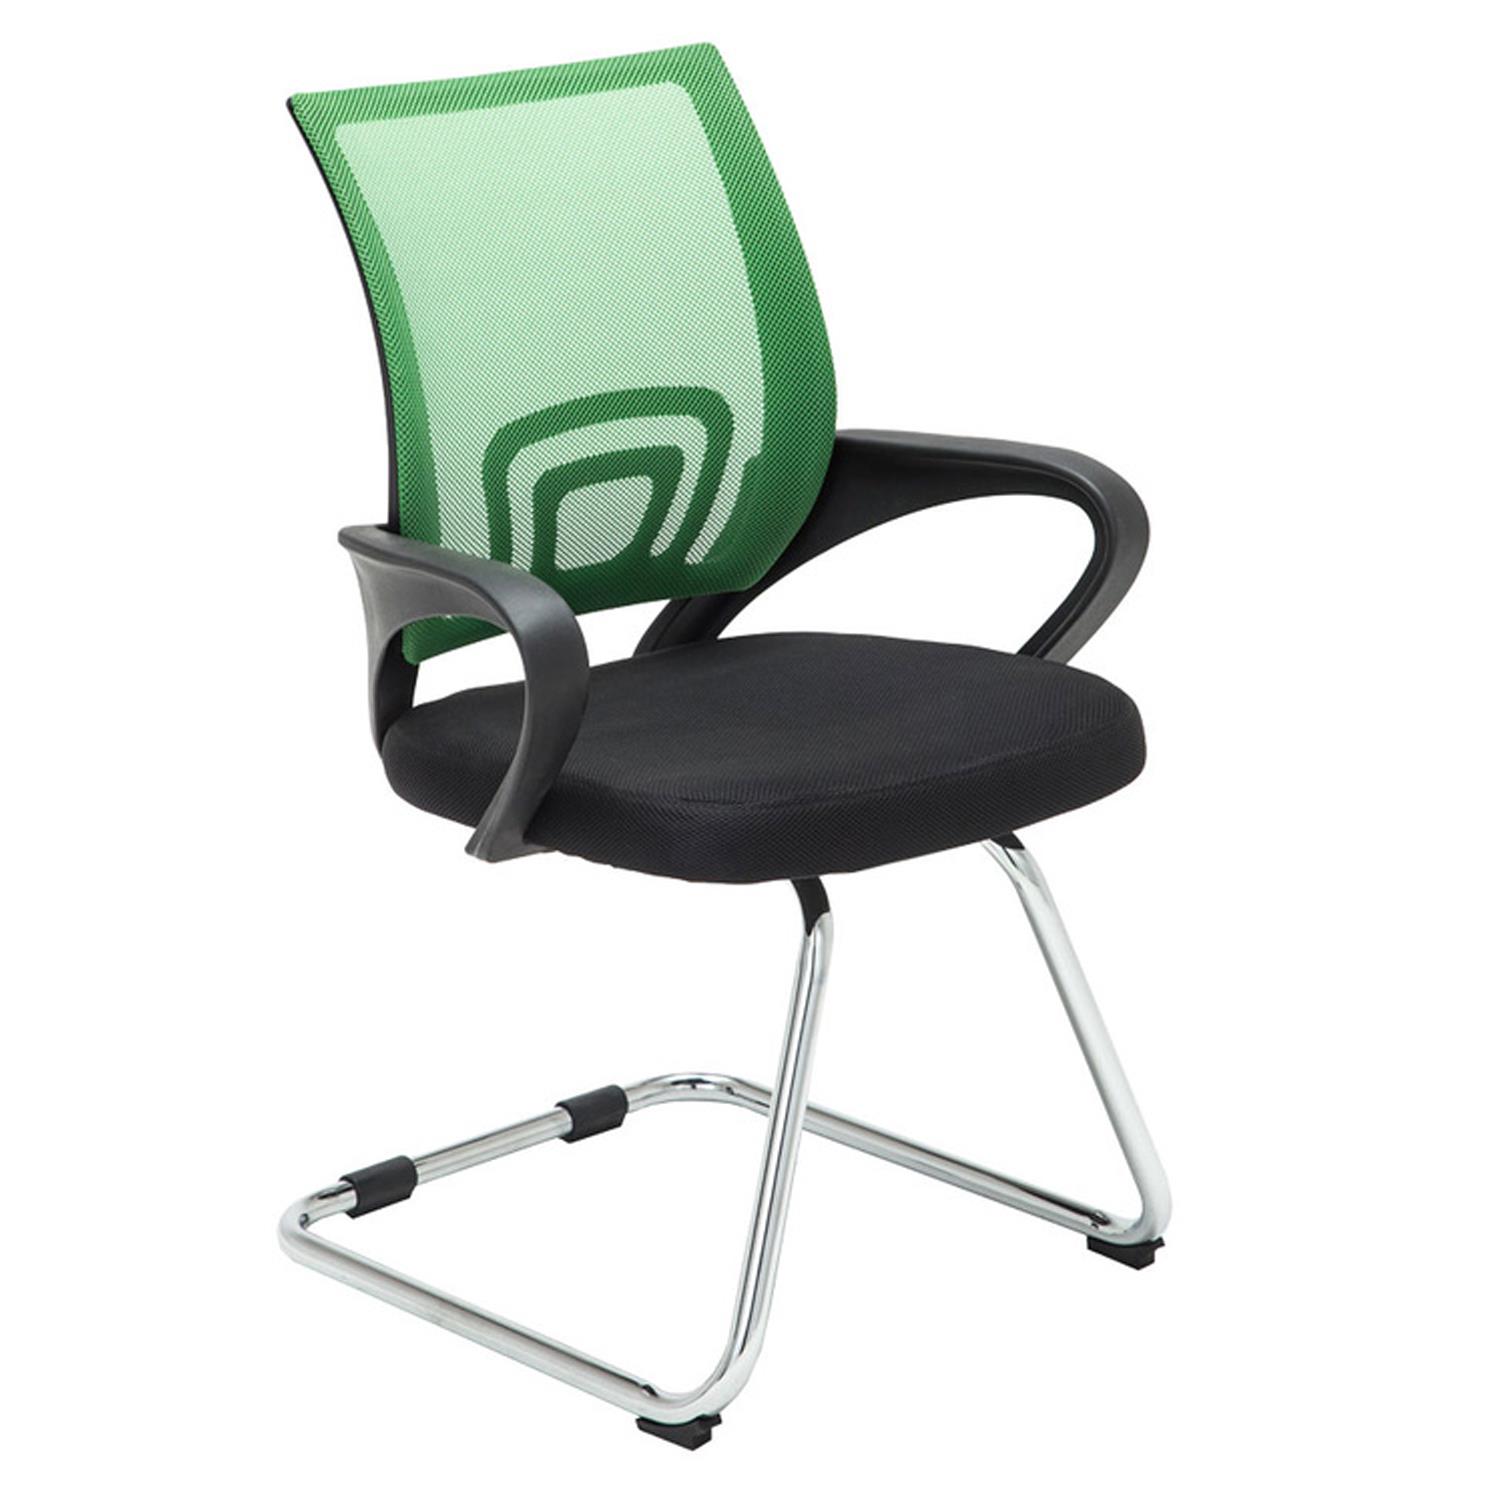 Konferenzstuhl SEOUL V, schönes Design, große gepolsterte Sitzfläche, Farbe Grün